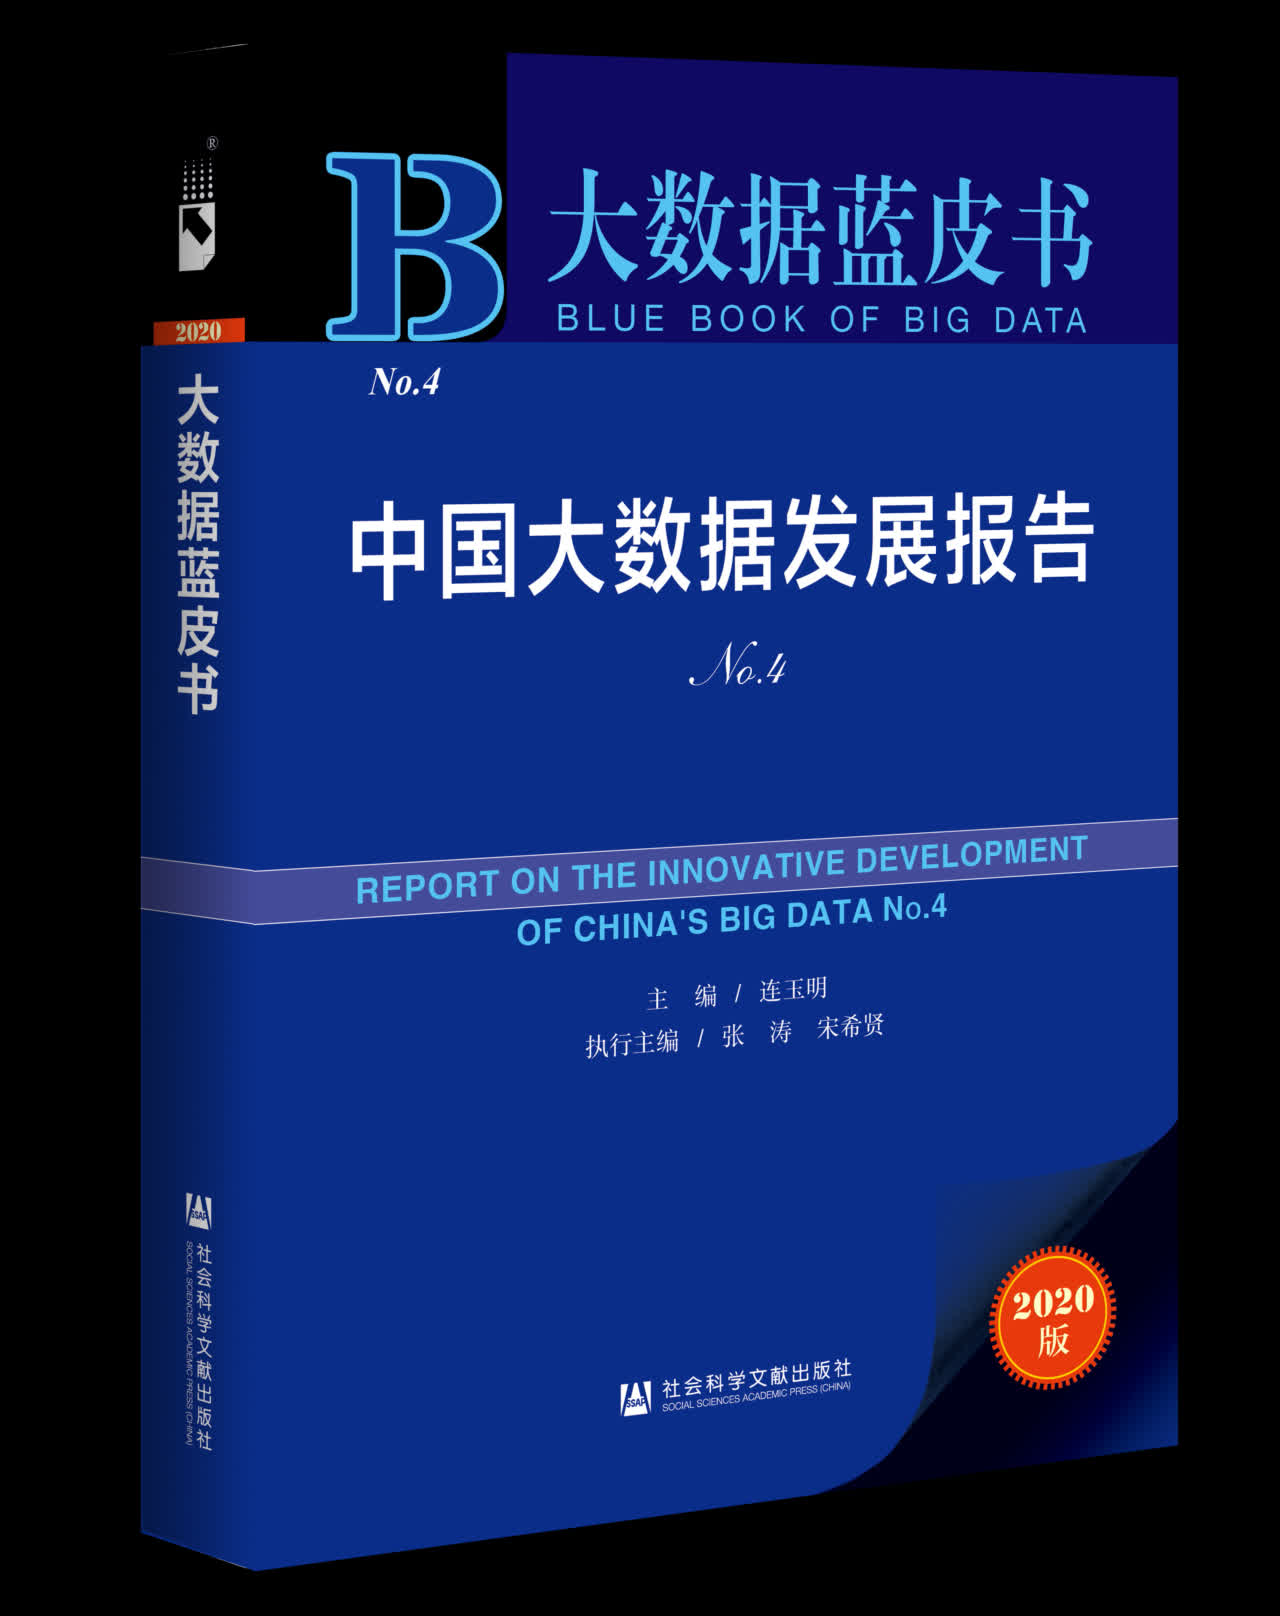 大數據藍皮書No.4m中國大數據發展報告n紙質樣書C